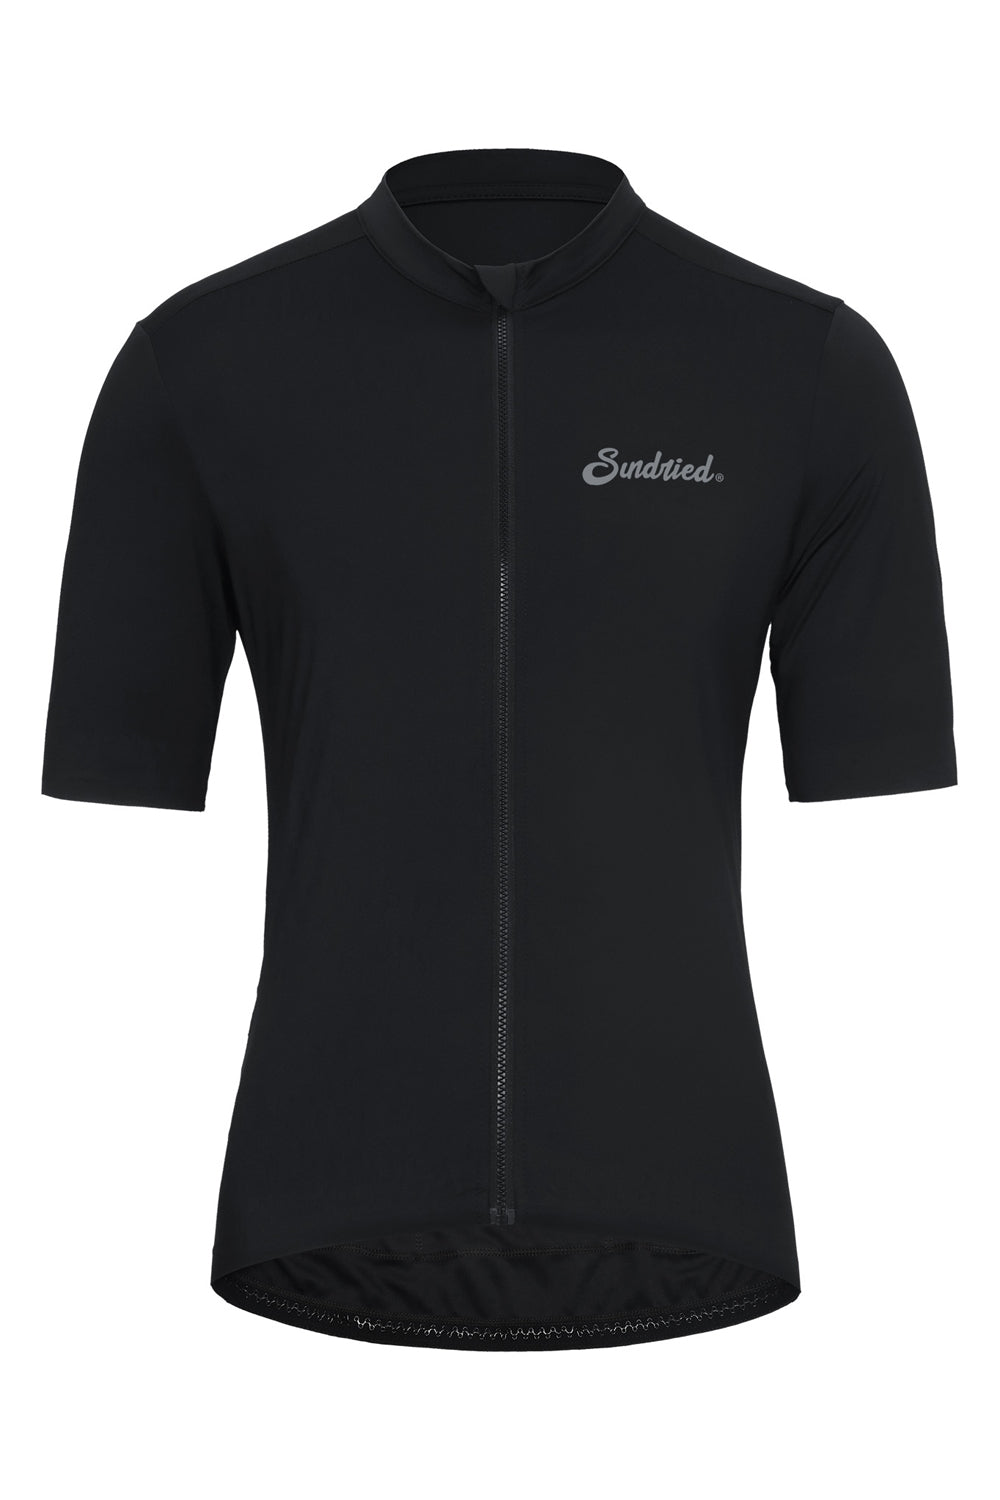 Sundried Sport Pianura Men's Black Short Sleeve Cycle Jersey Short Sleeve Jersey S SS1001 S Black Activewear